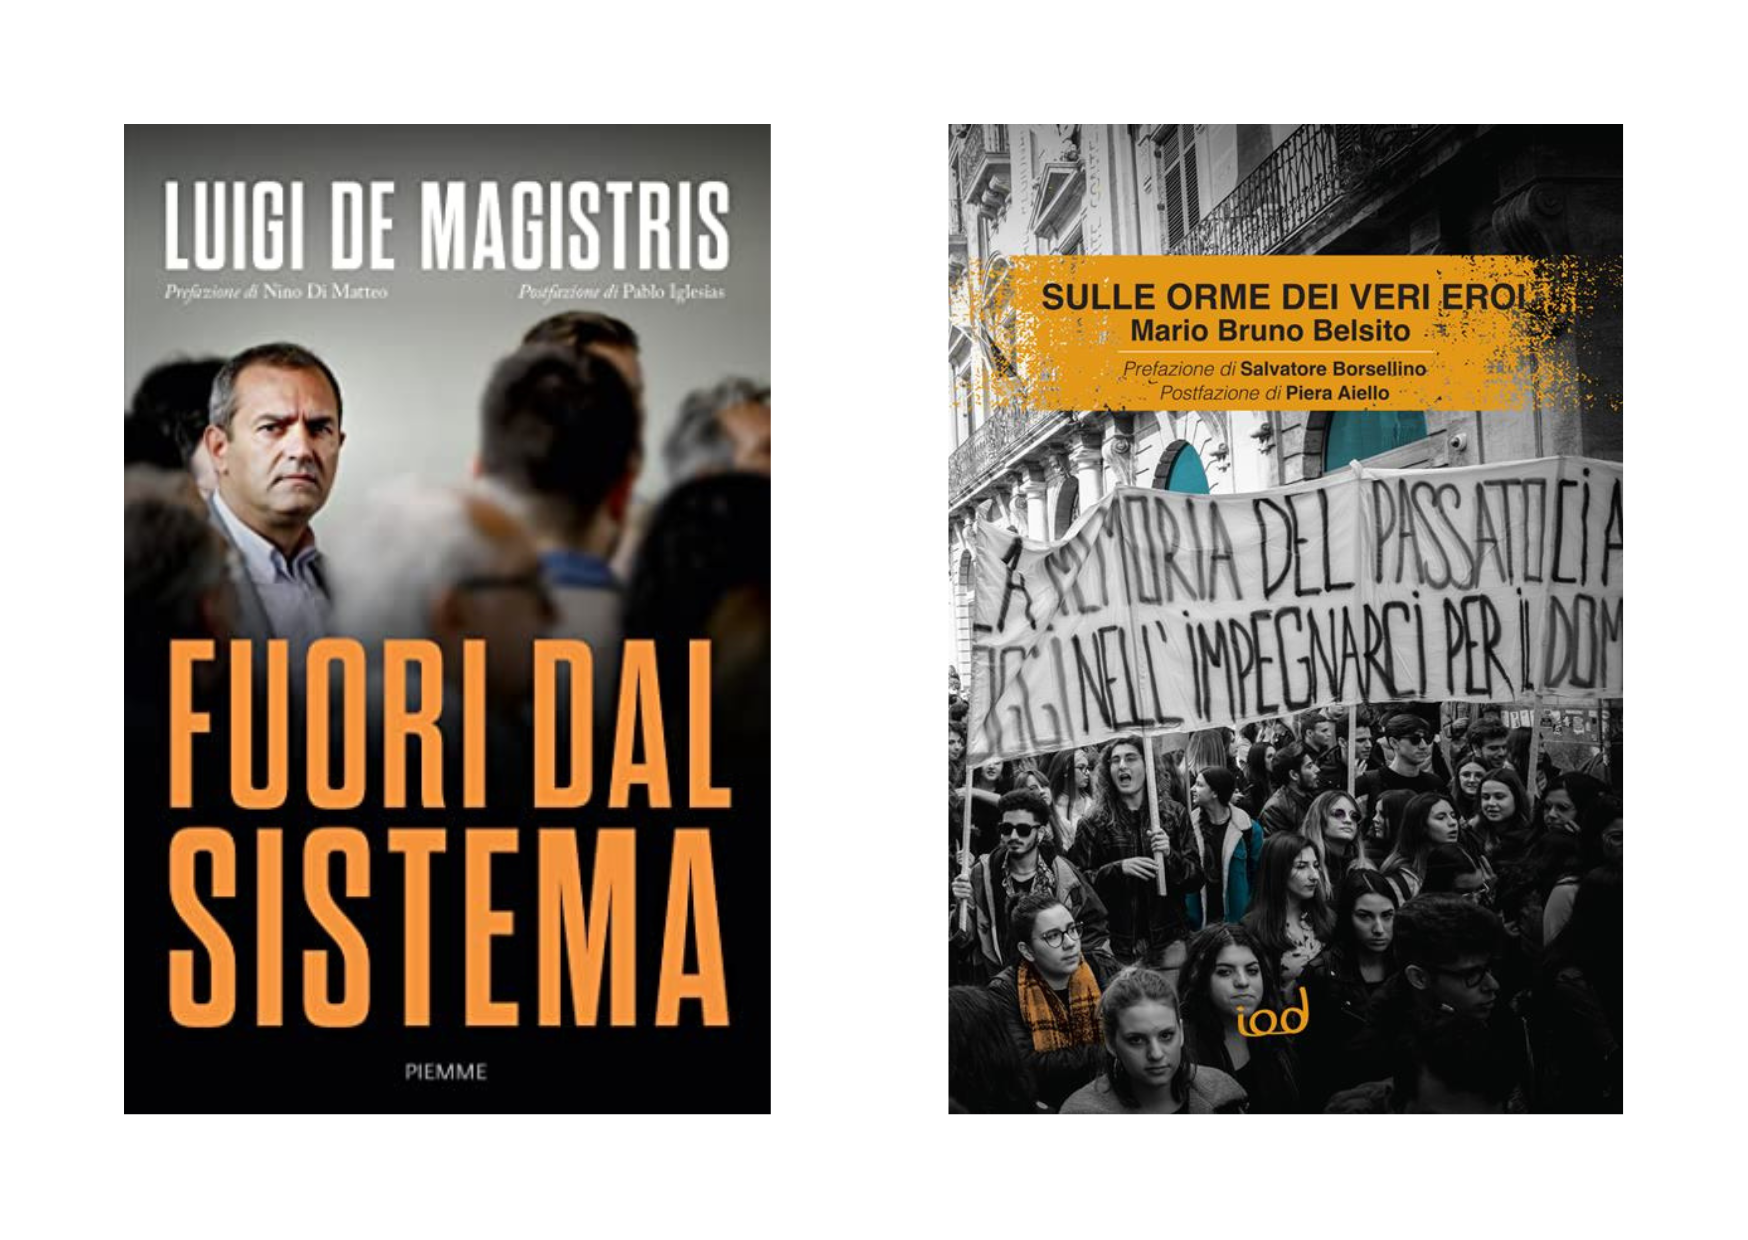 Mario Bruno Belsito e Luigi De Magistris presentano i loro libri